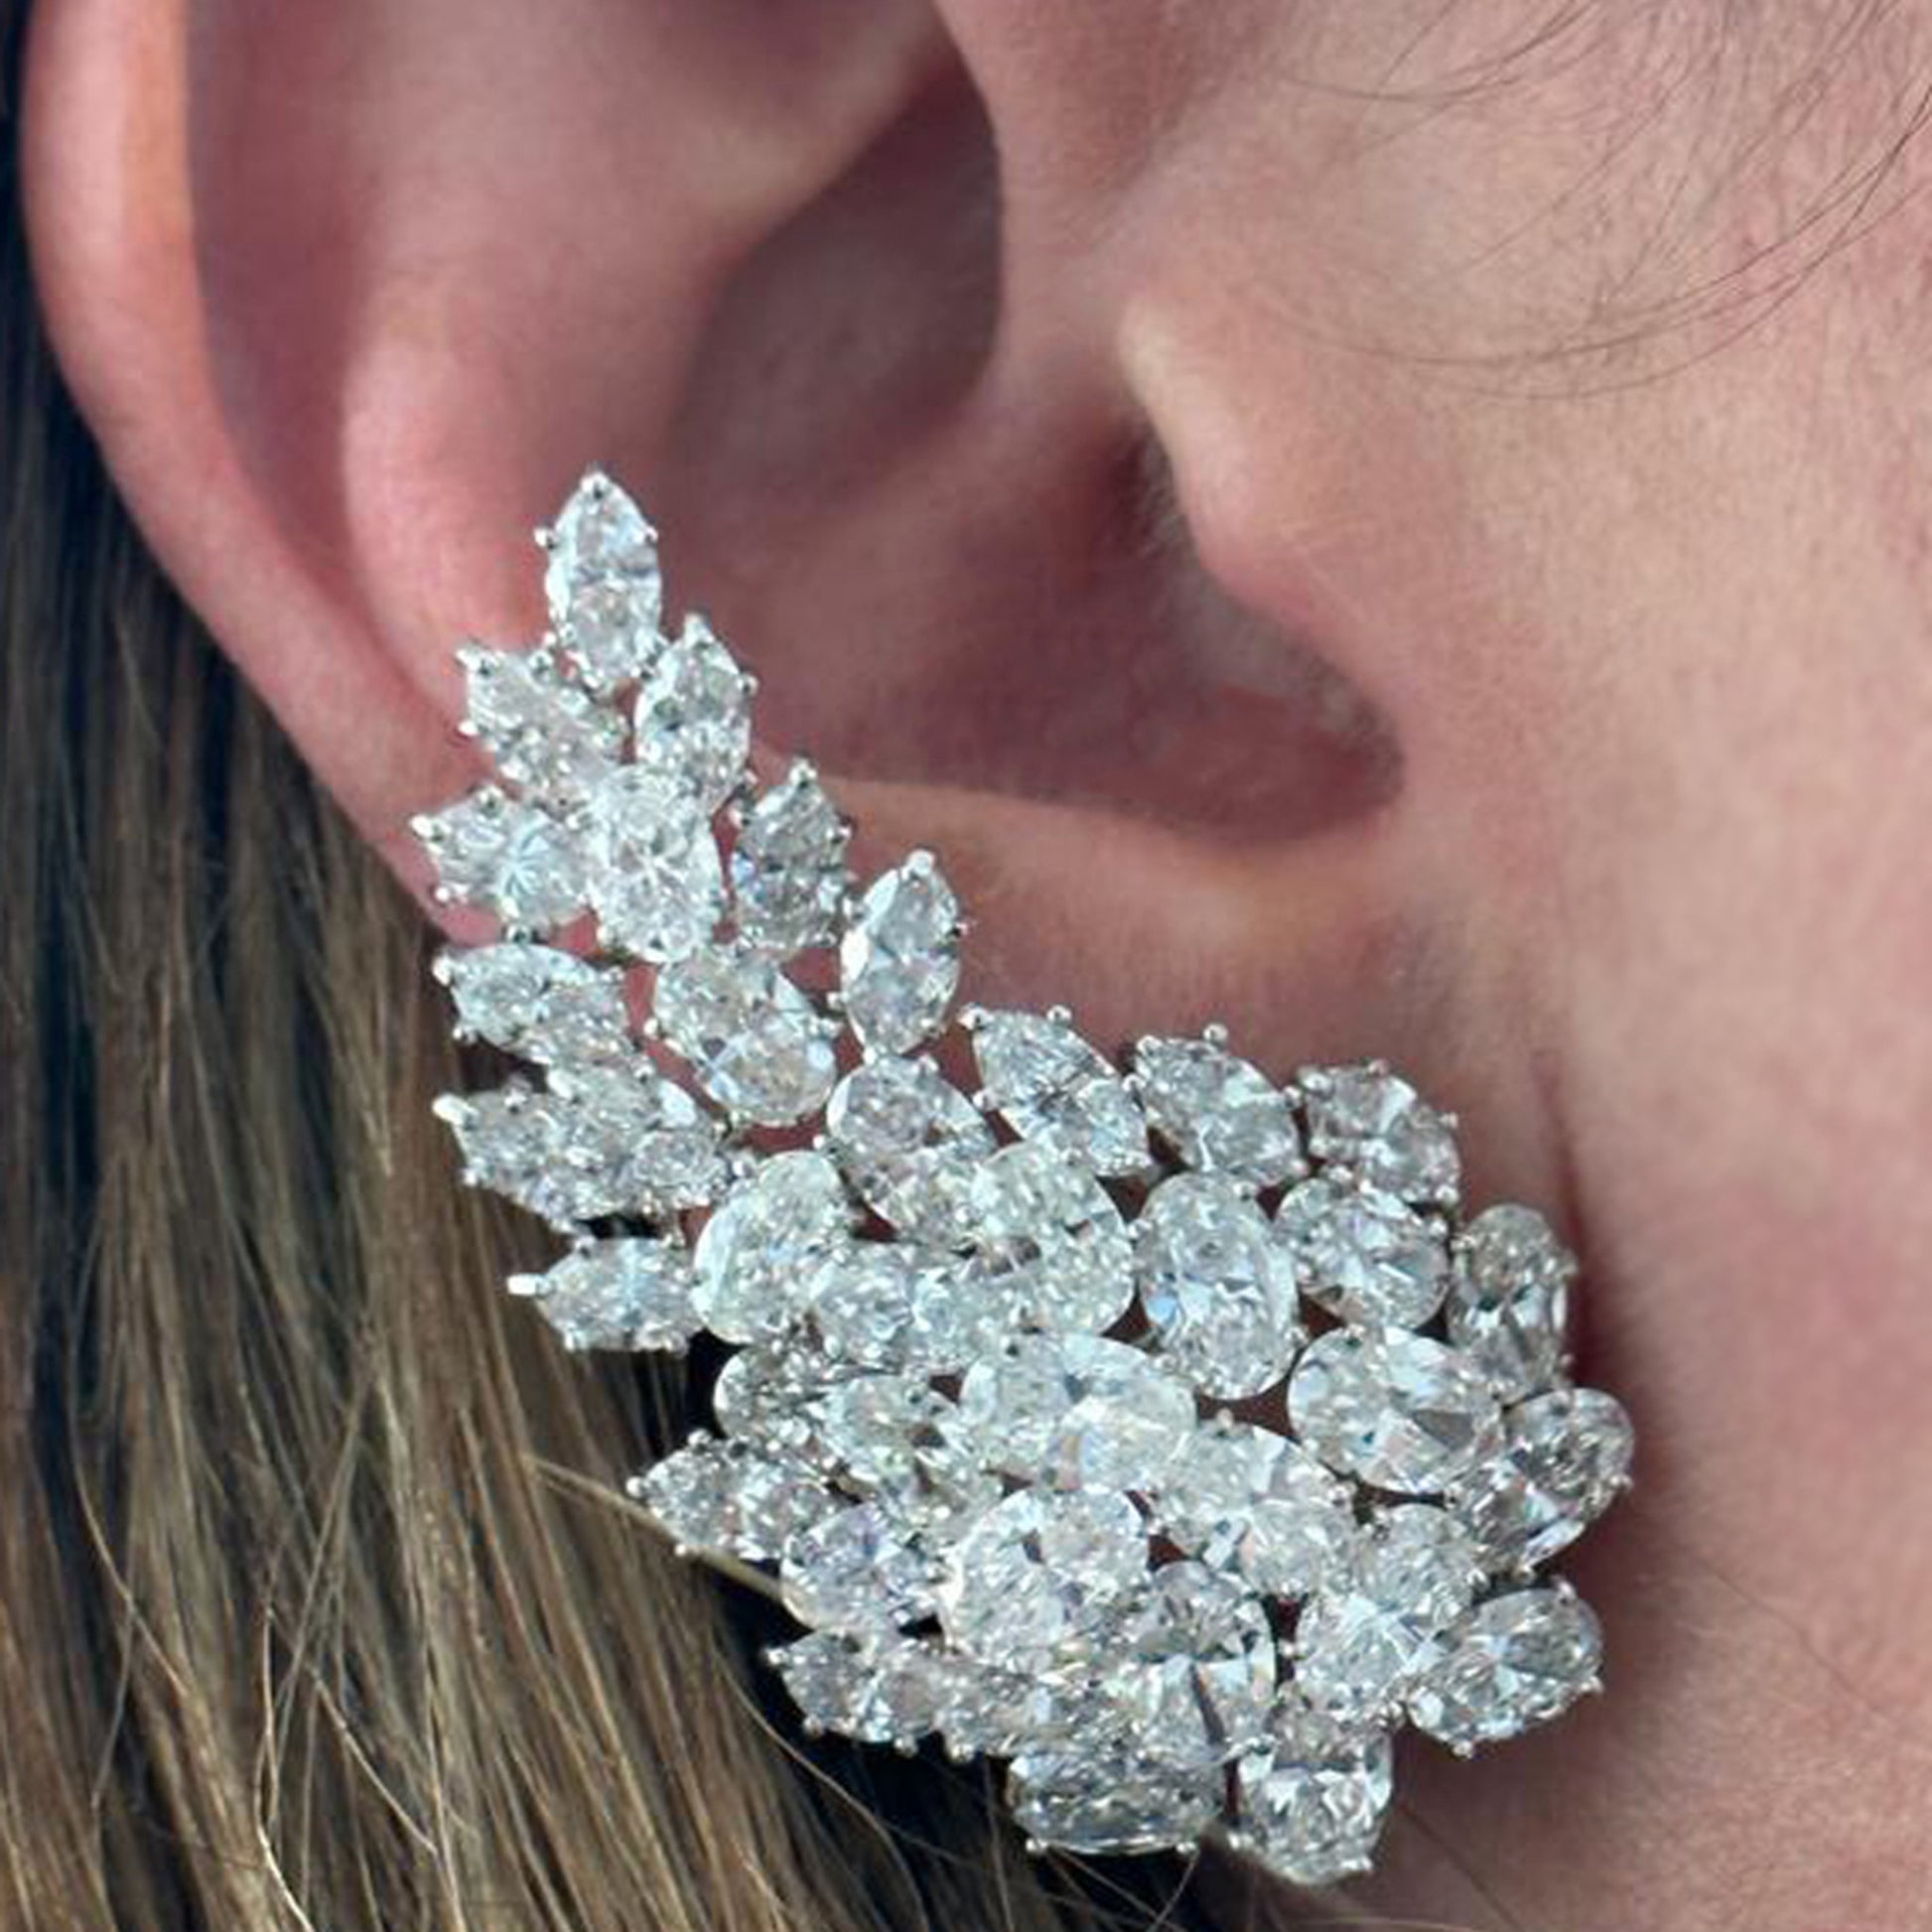 Hammerman Brothers 1970s Platinum Diamond Earrings worn on ear